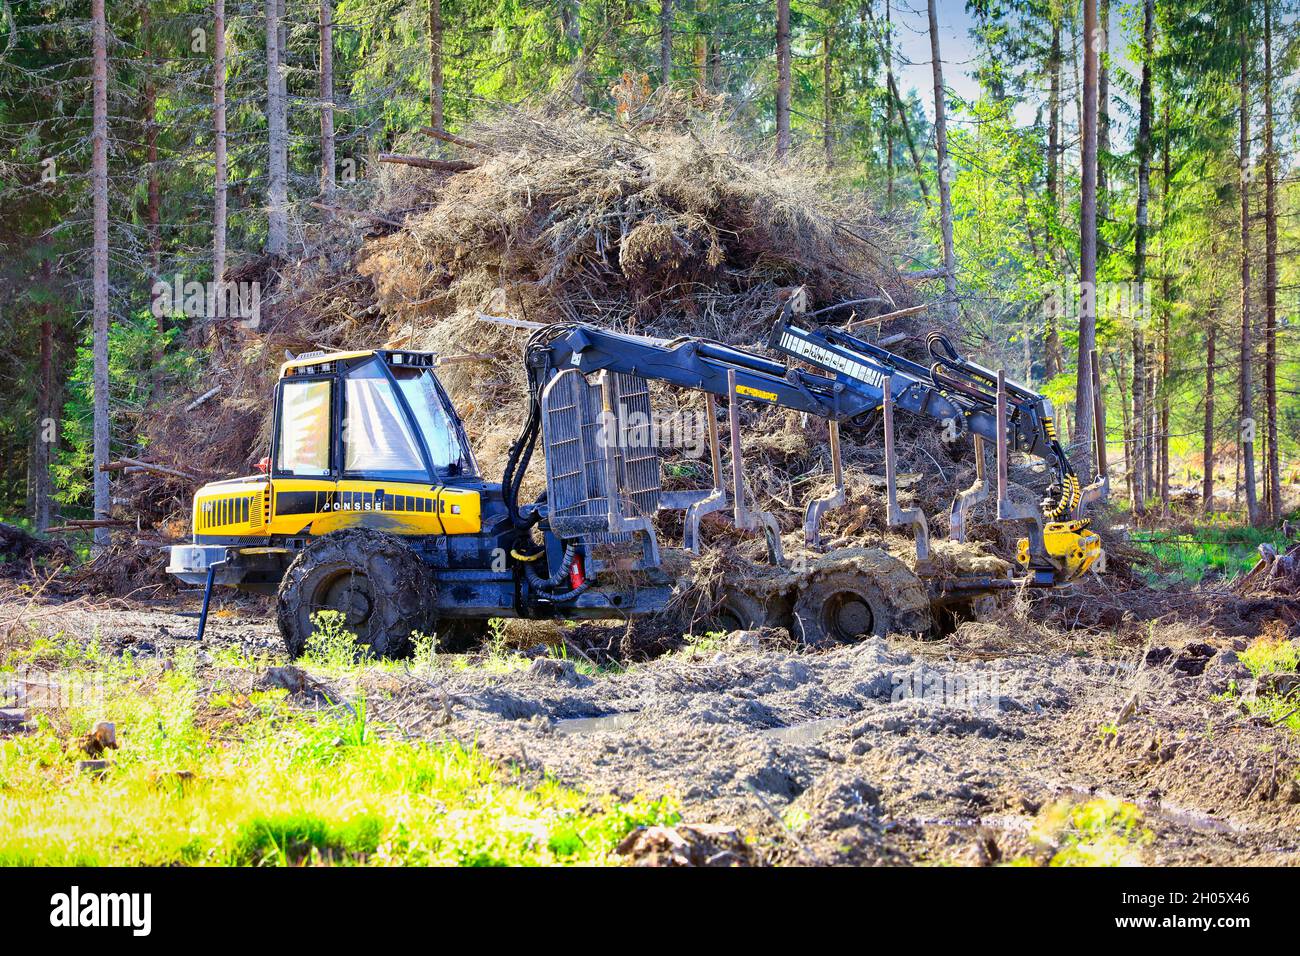 PONSSE porteur forestier compact Elk sur site forestier humide au début de l'automne à côté d'un tas de bois de brushwood.Koski Tl, Finlande.7 août 2020. Banque D'Images